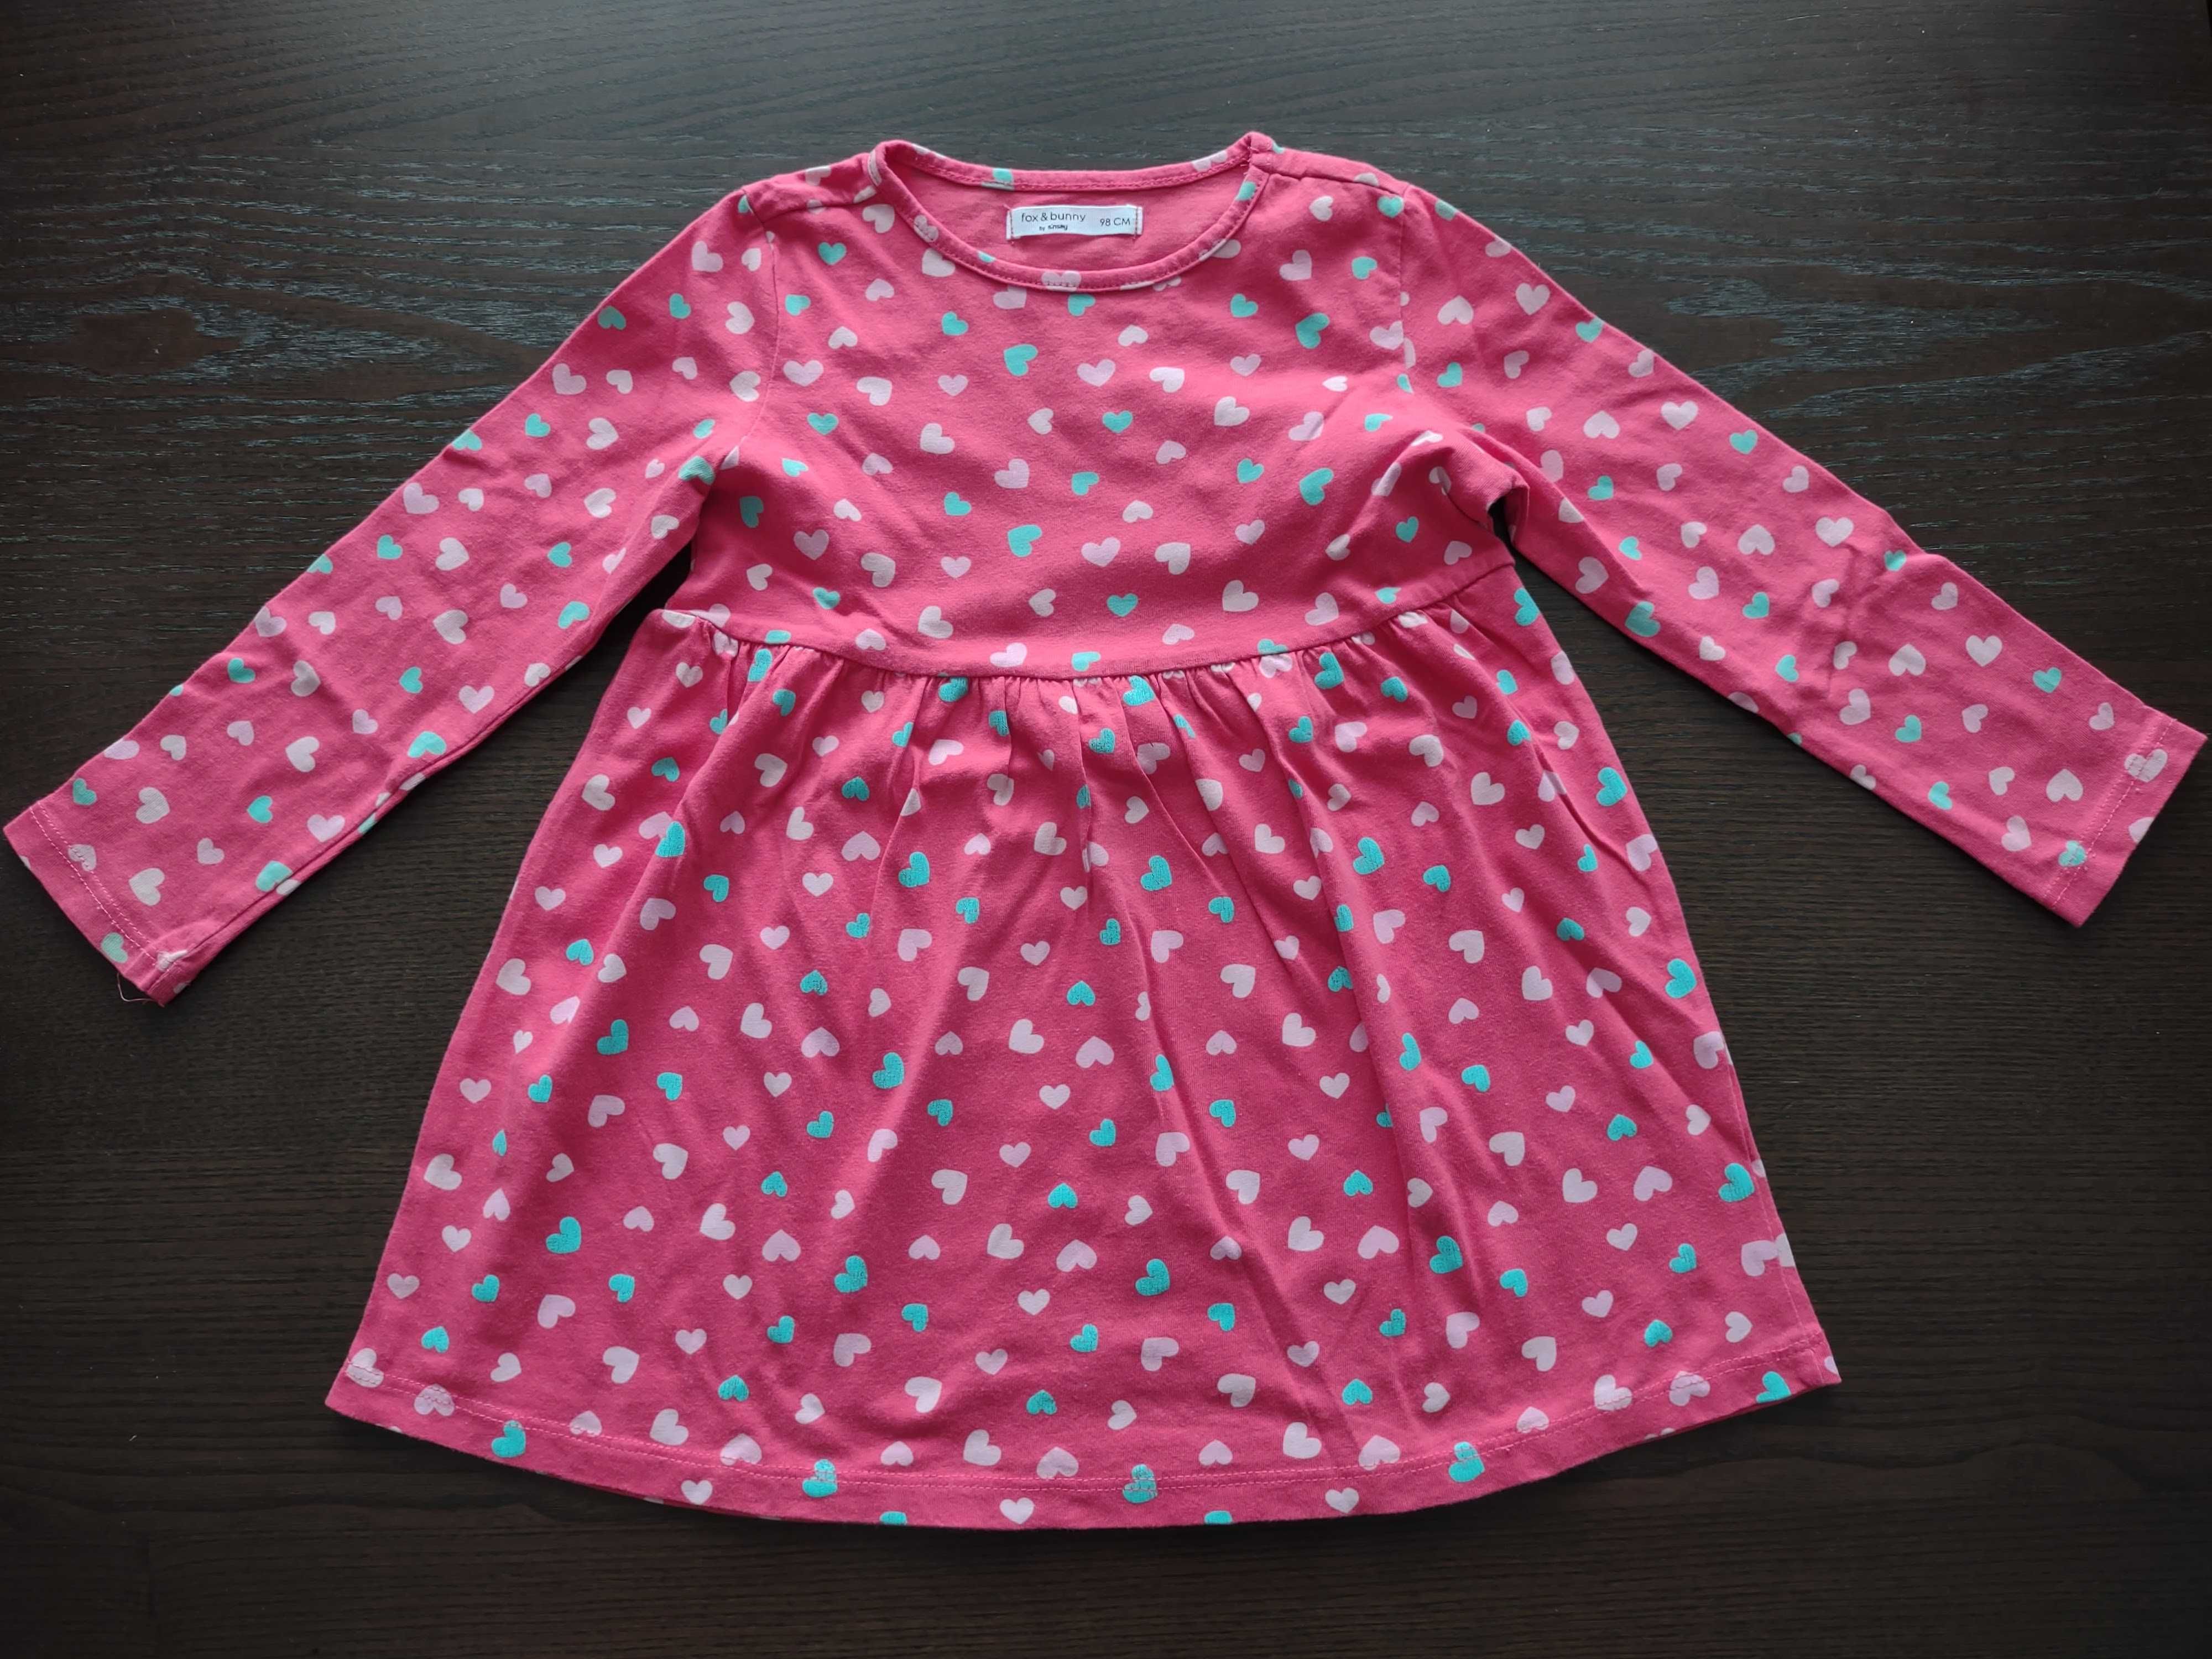 Sukienka - 98 cm, malinowy kolor we wzory, długi rękaw - dla dziecka